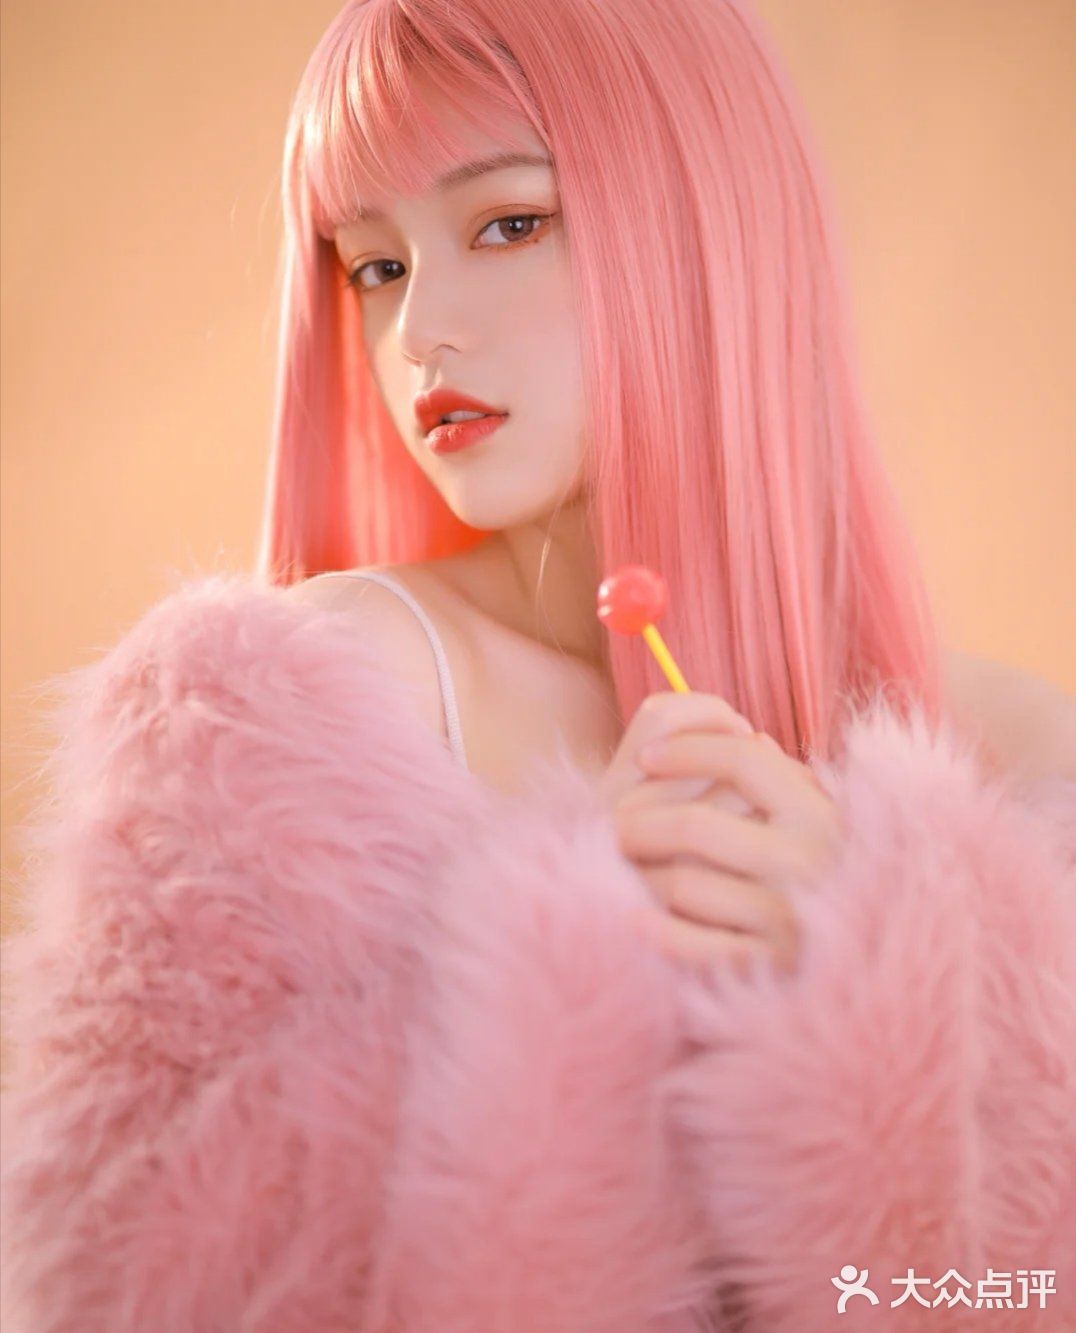 酷中带甜人间芭比棚拍写真粉色头发好可之前拍的粉色头发